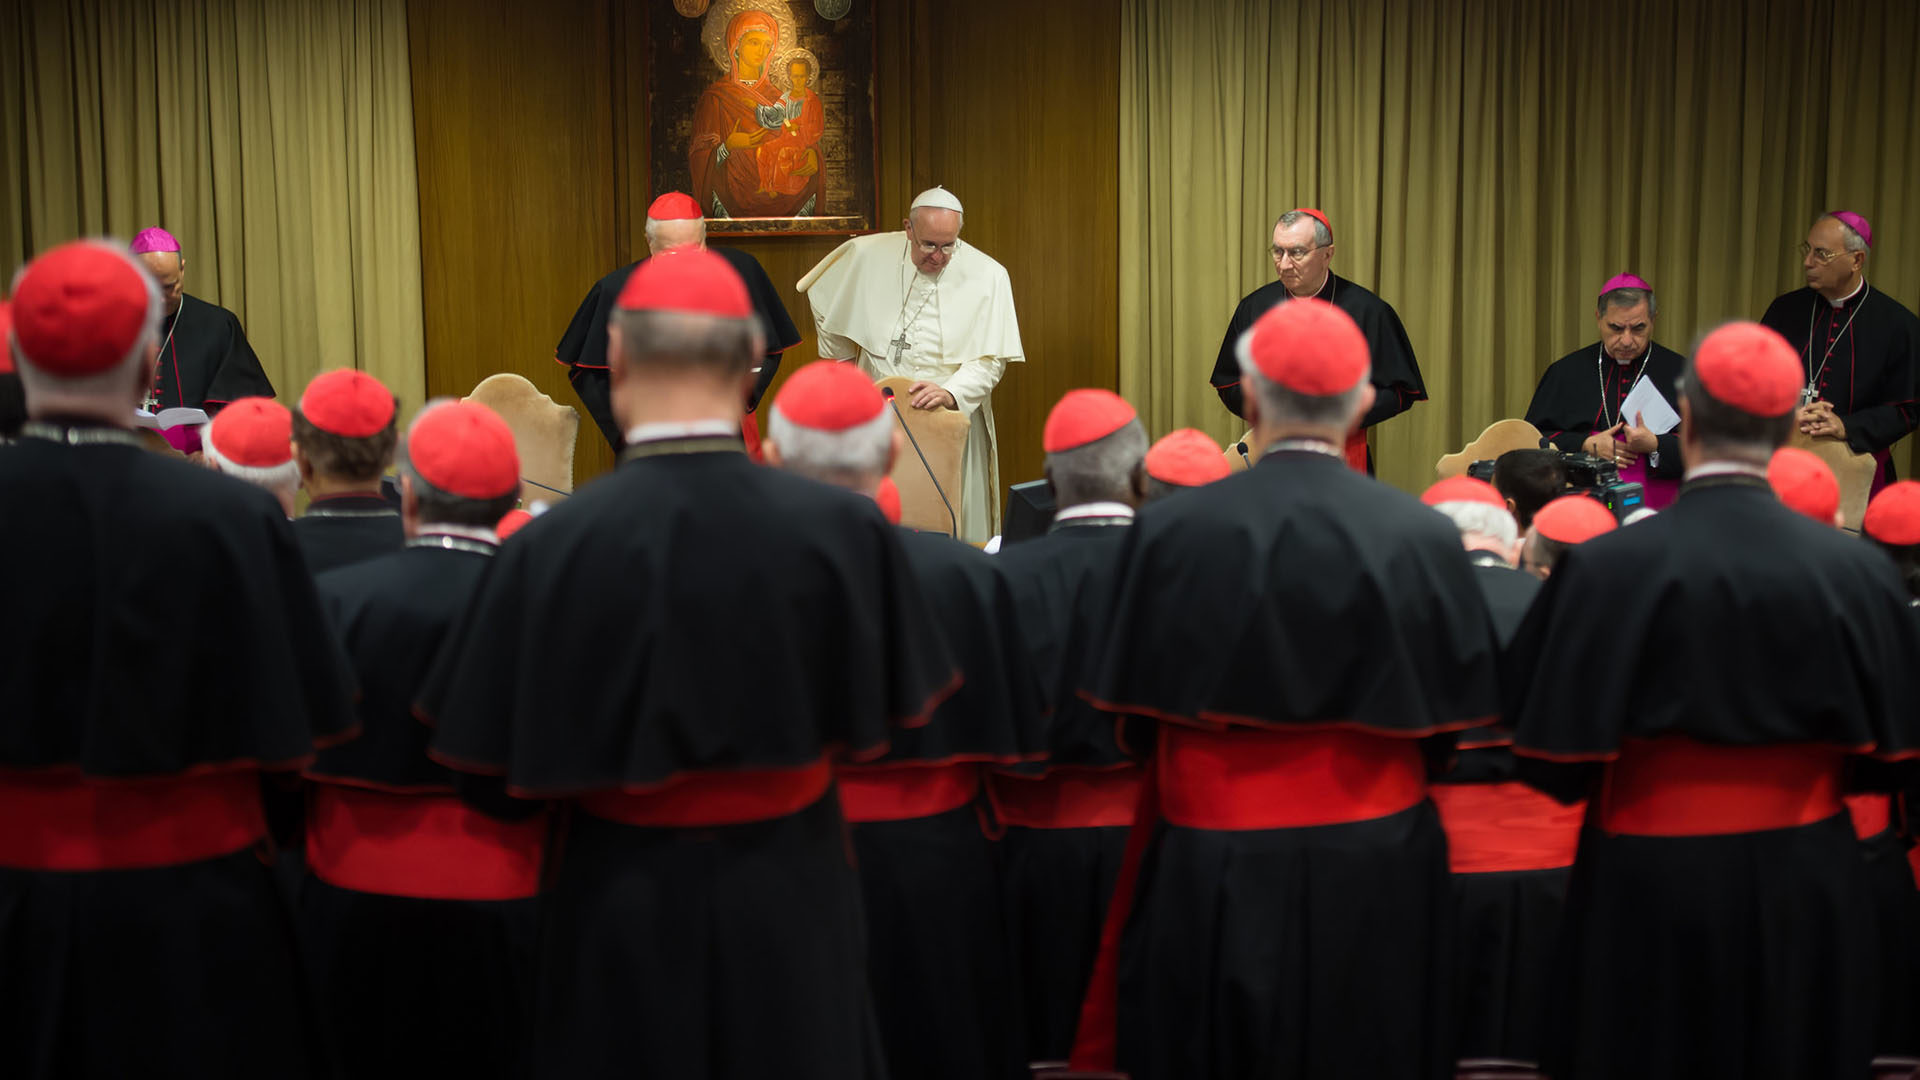 Le pape et les cardinaux lors du consistoire d'octobre 2014 | © Flickr/Mazur/catholicnews.org.uk/CC BY-NC-SA 2.0